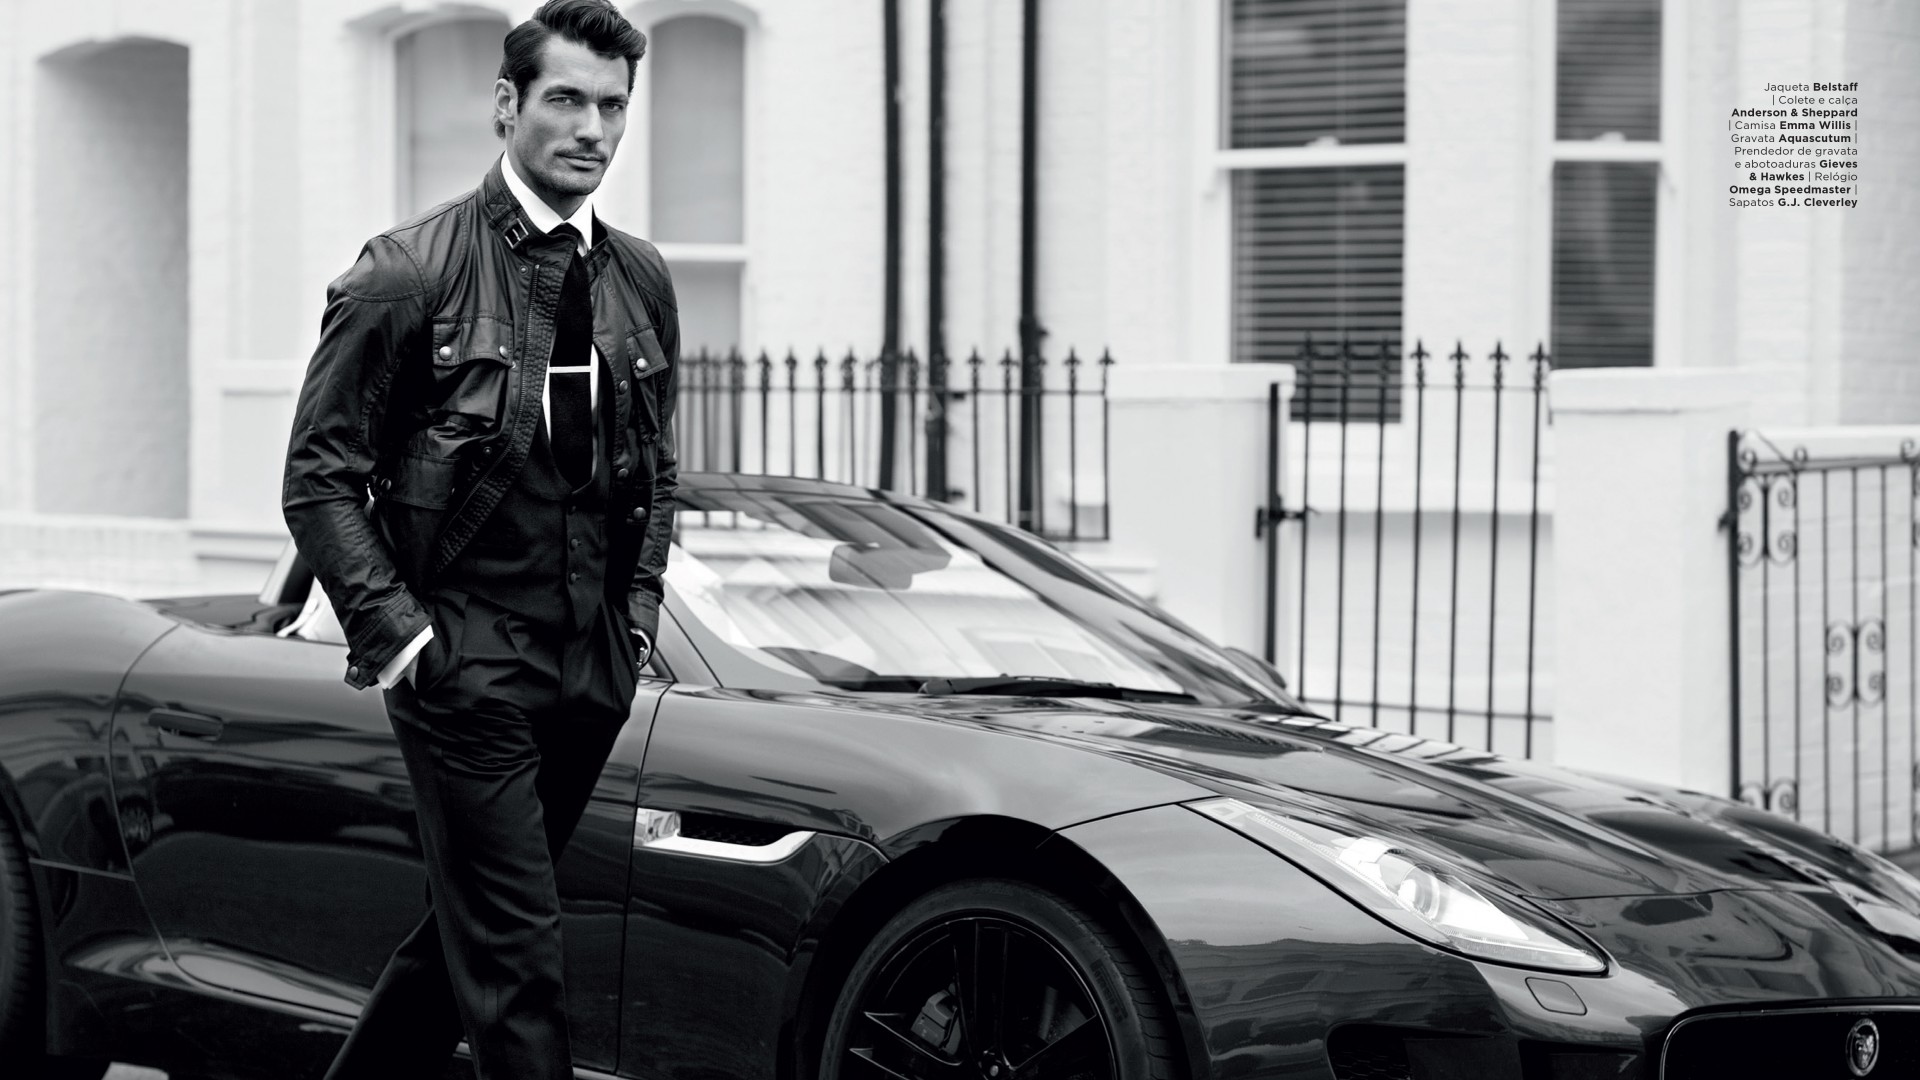 Дэвид Генди, Топ Модель 2015, модель, Лондон, Великобритания, машина, улица, David Gandy, Top Fashion Models 2015, model, London, UK, car, street (horizontal)